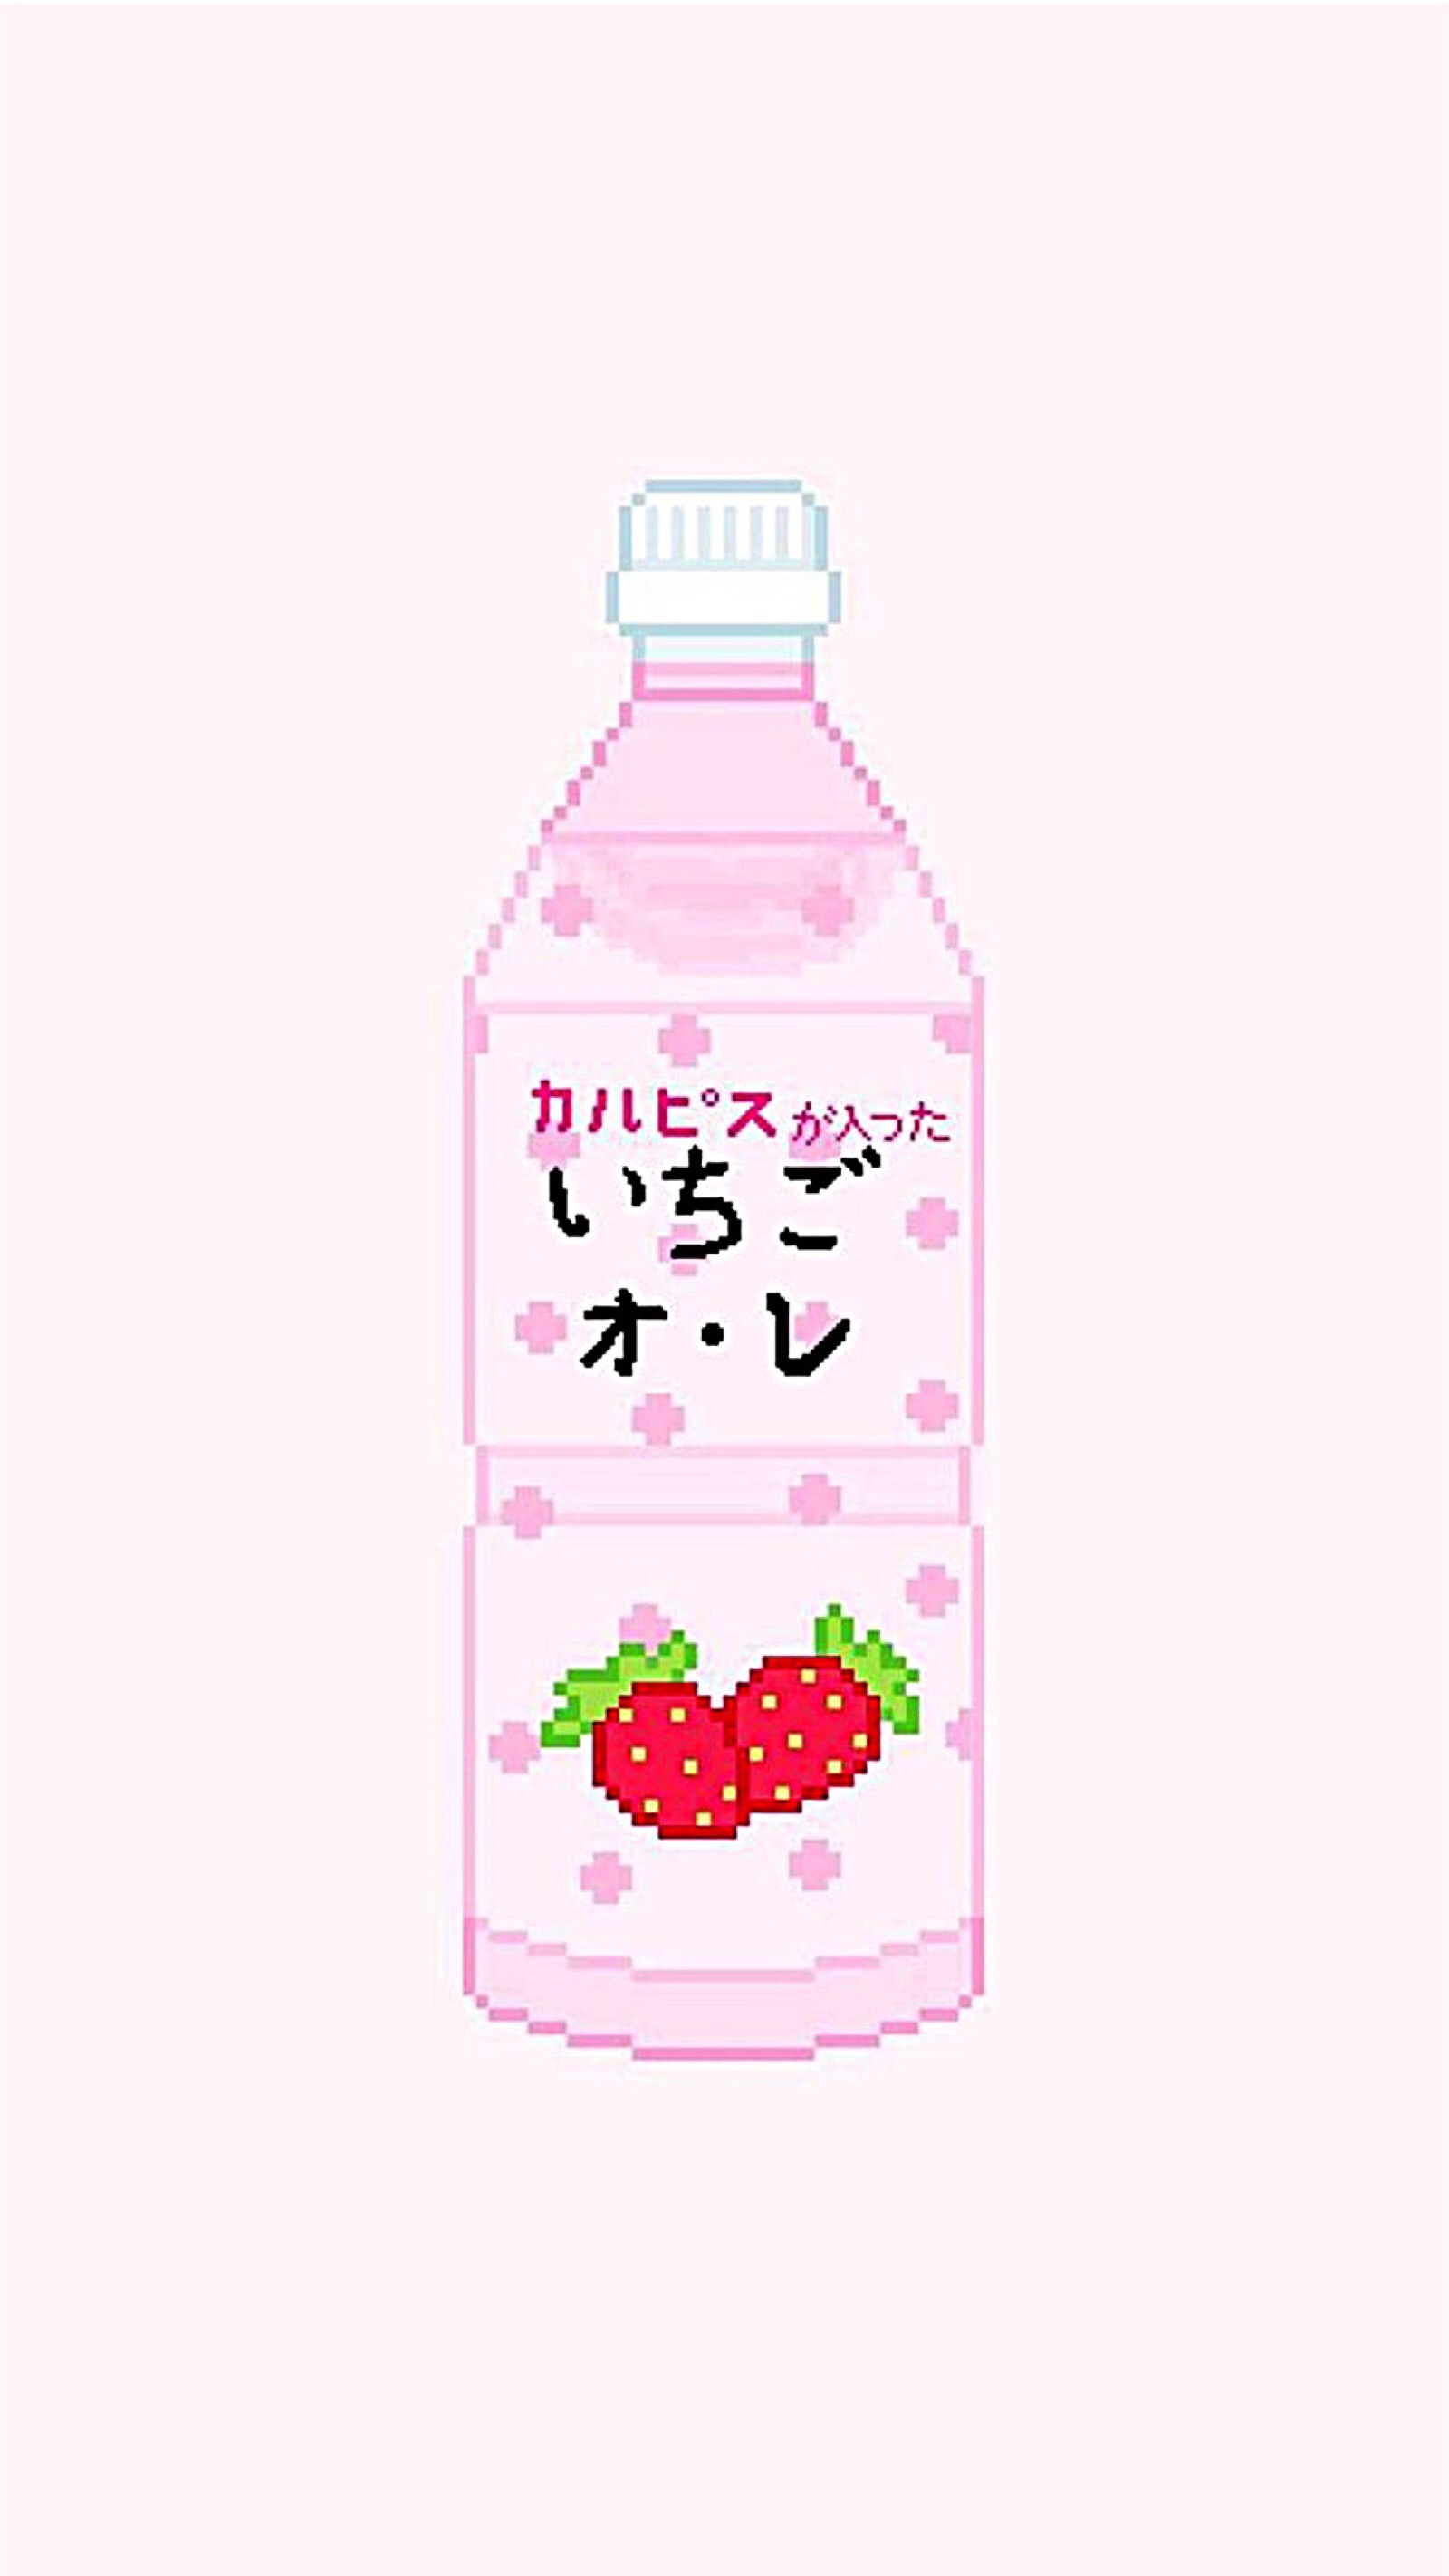 日系牛奶草莓卡通壁纸图片